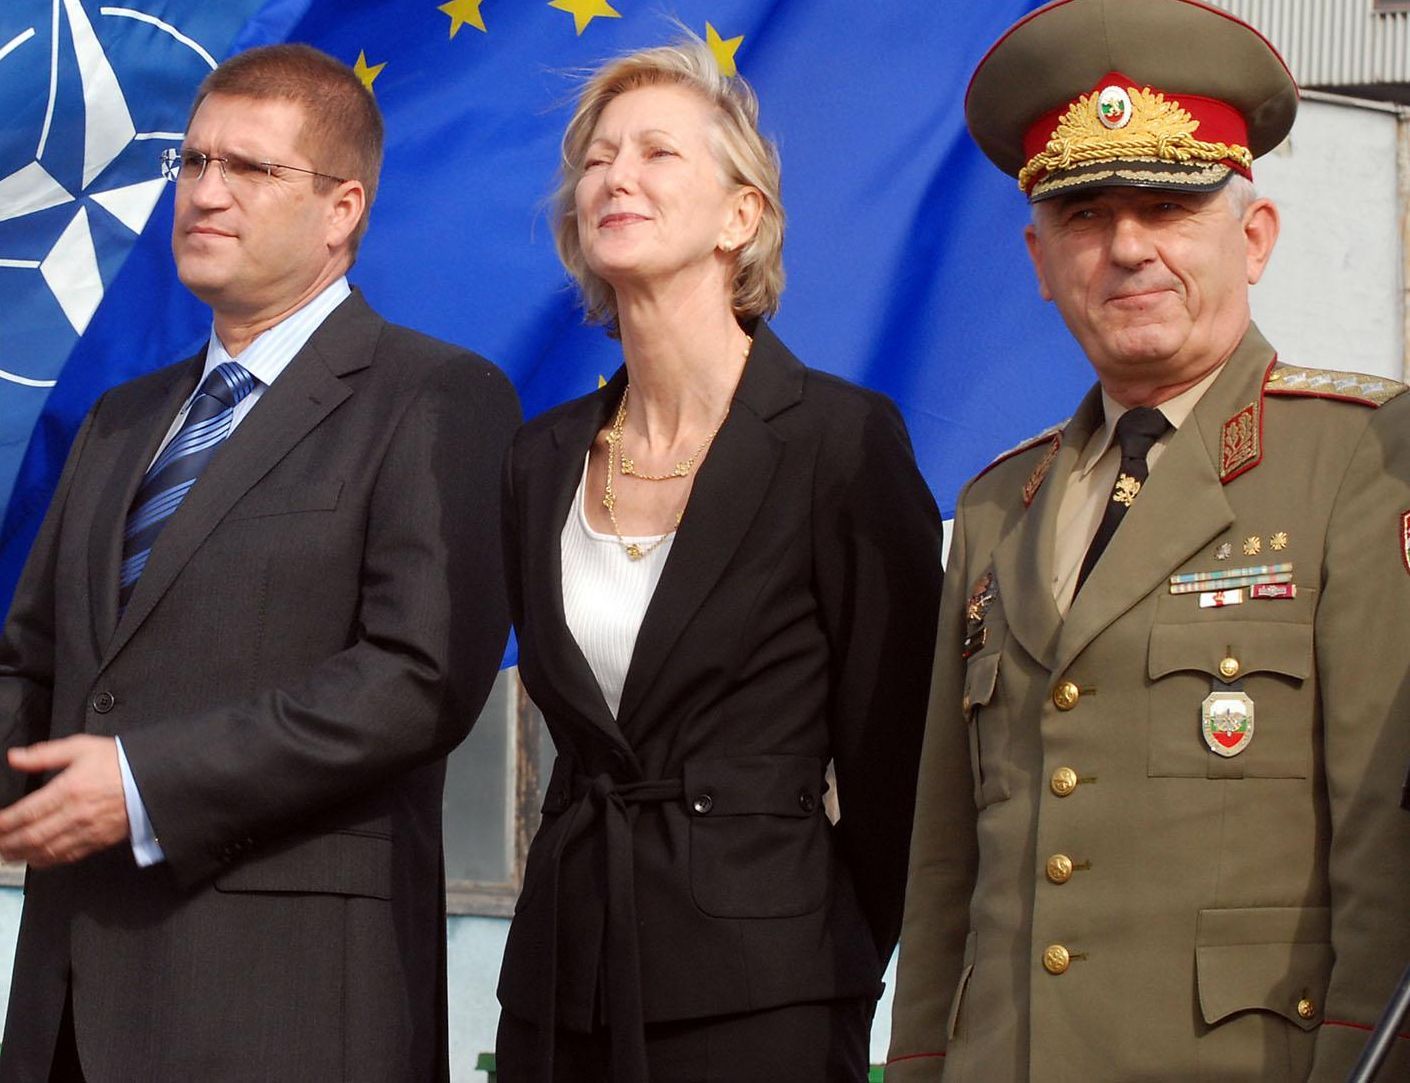 3 ноември 2008 г. - Министърът на отбраната Николай Цонев, американският посланик Нанси Макълдауни и началникът на генералния щаб на БА ген. Златан Стойков присъстват на пускането в експлоатация на 100-тонен мобилен кран във Варна